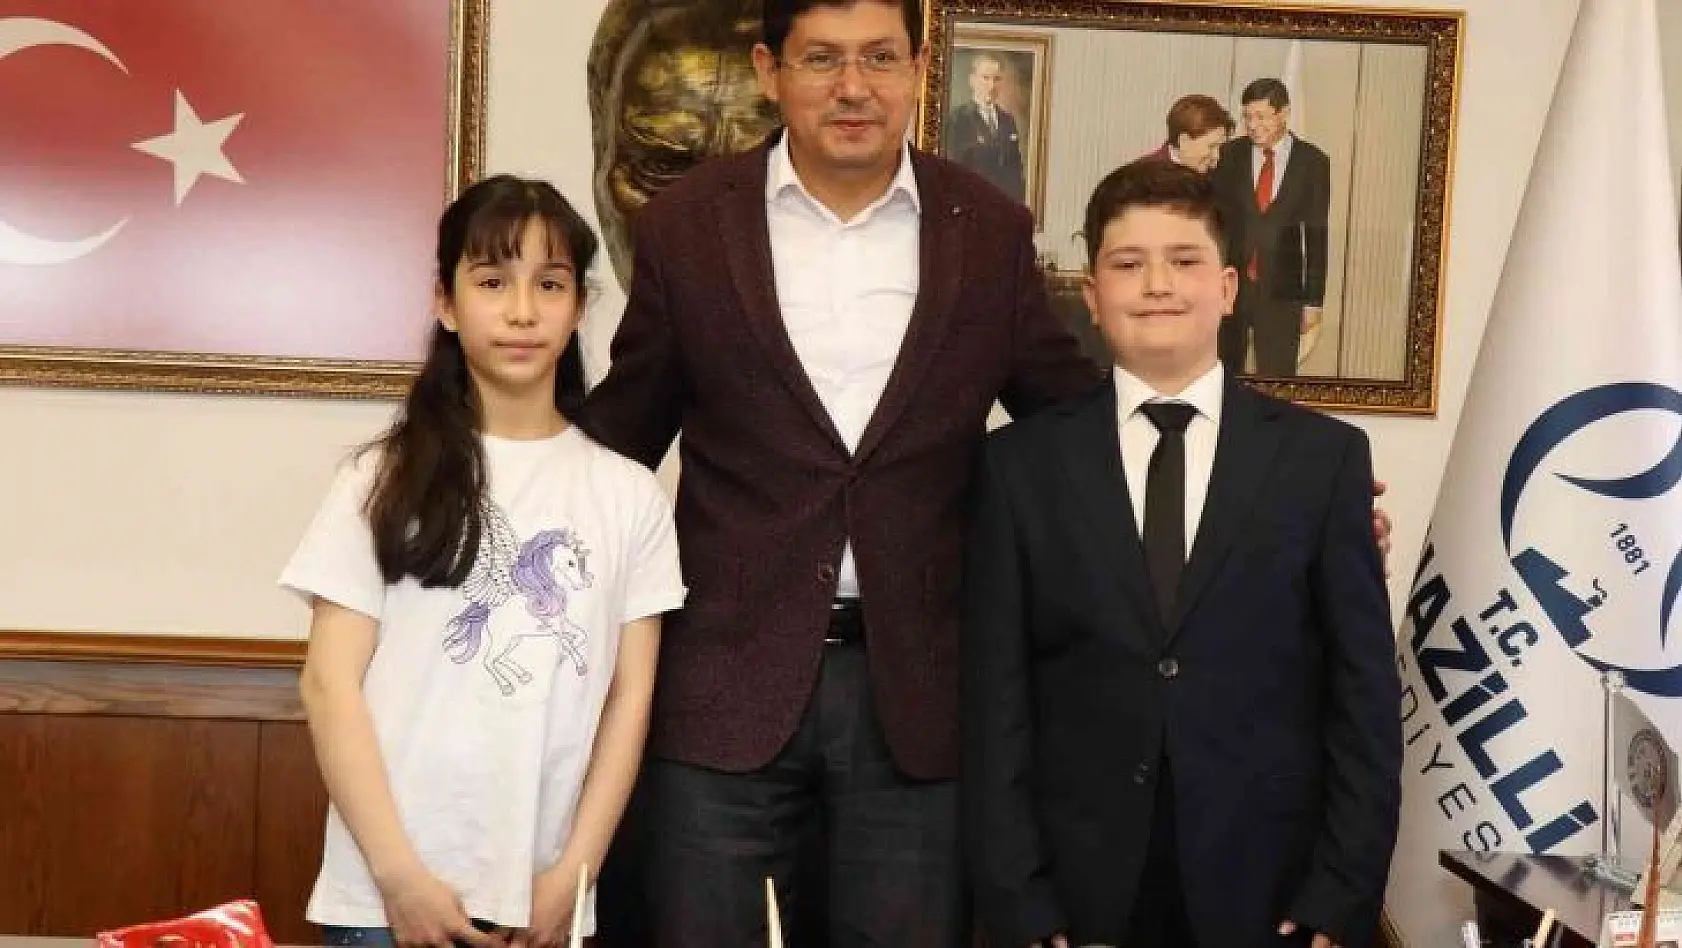 Başkan Özcan makam koltuğunu çocuklara devretti